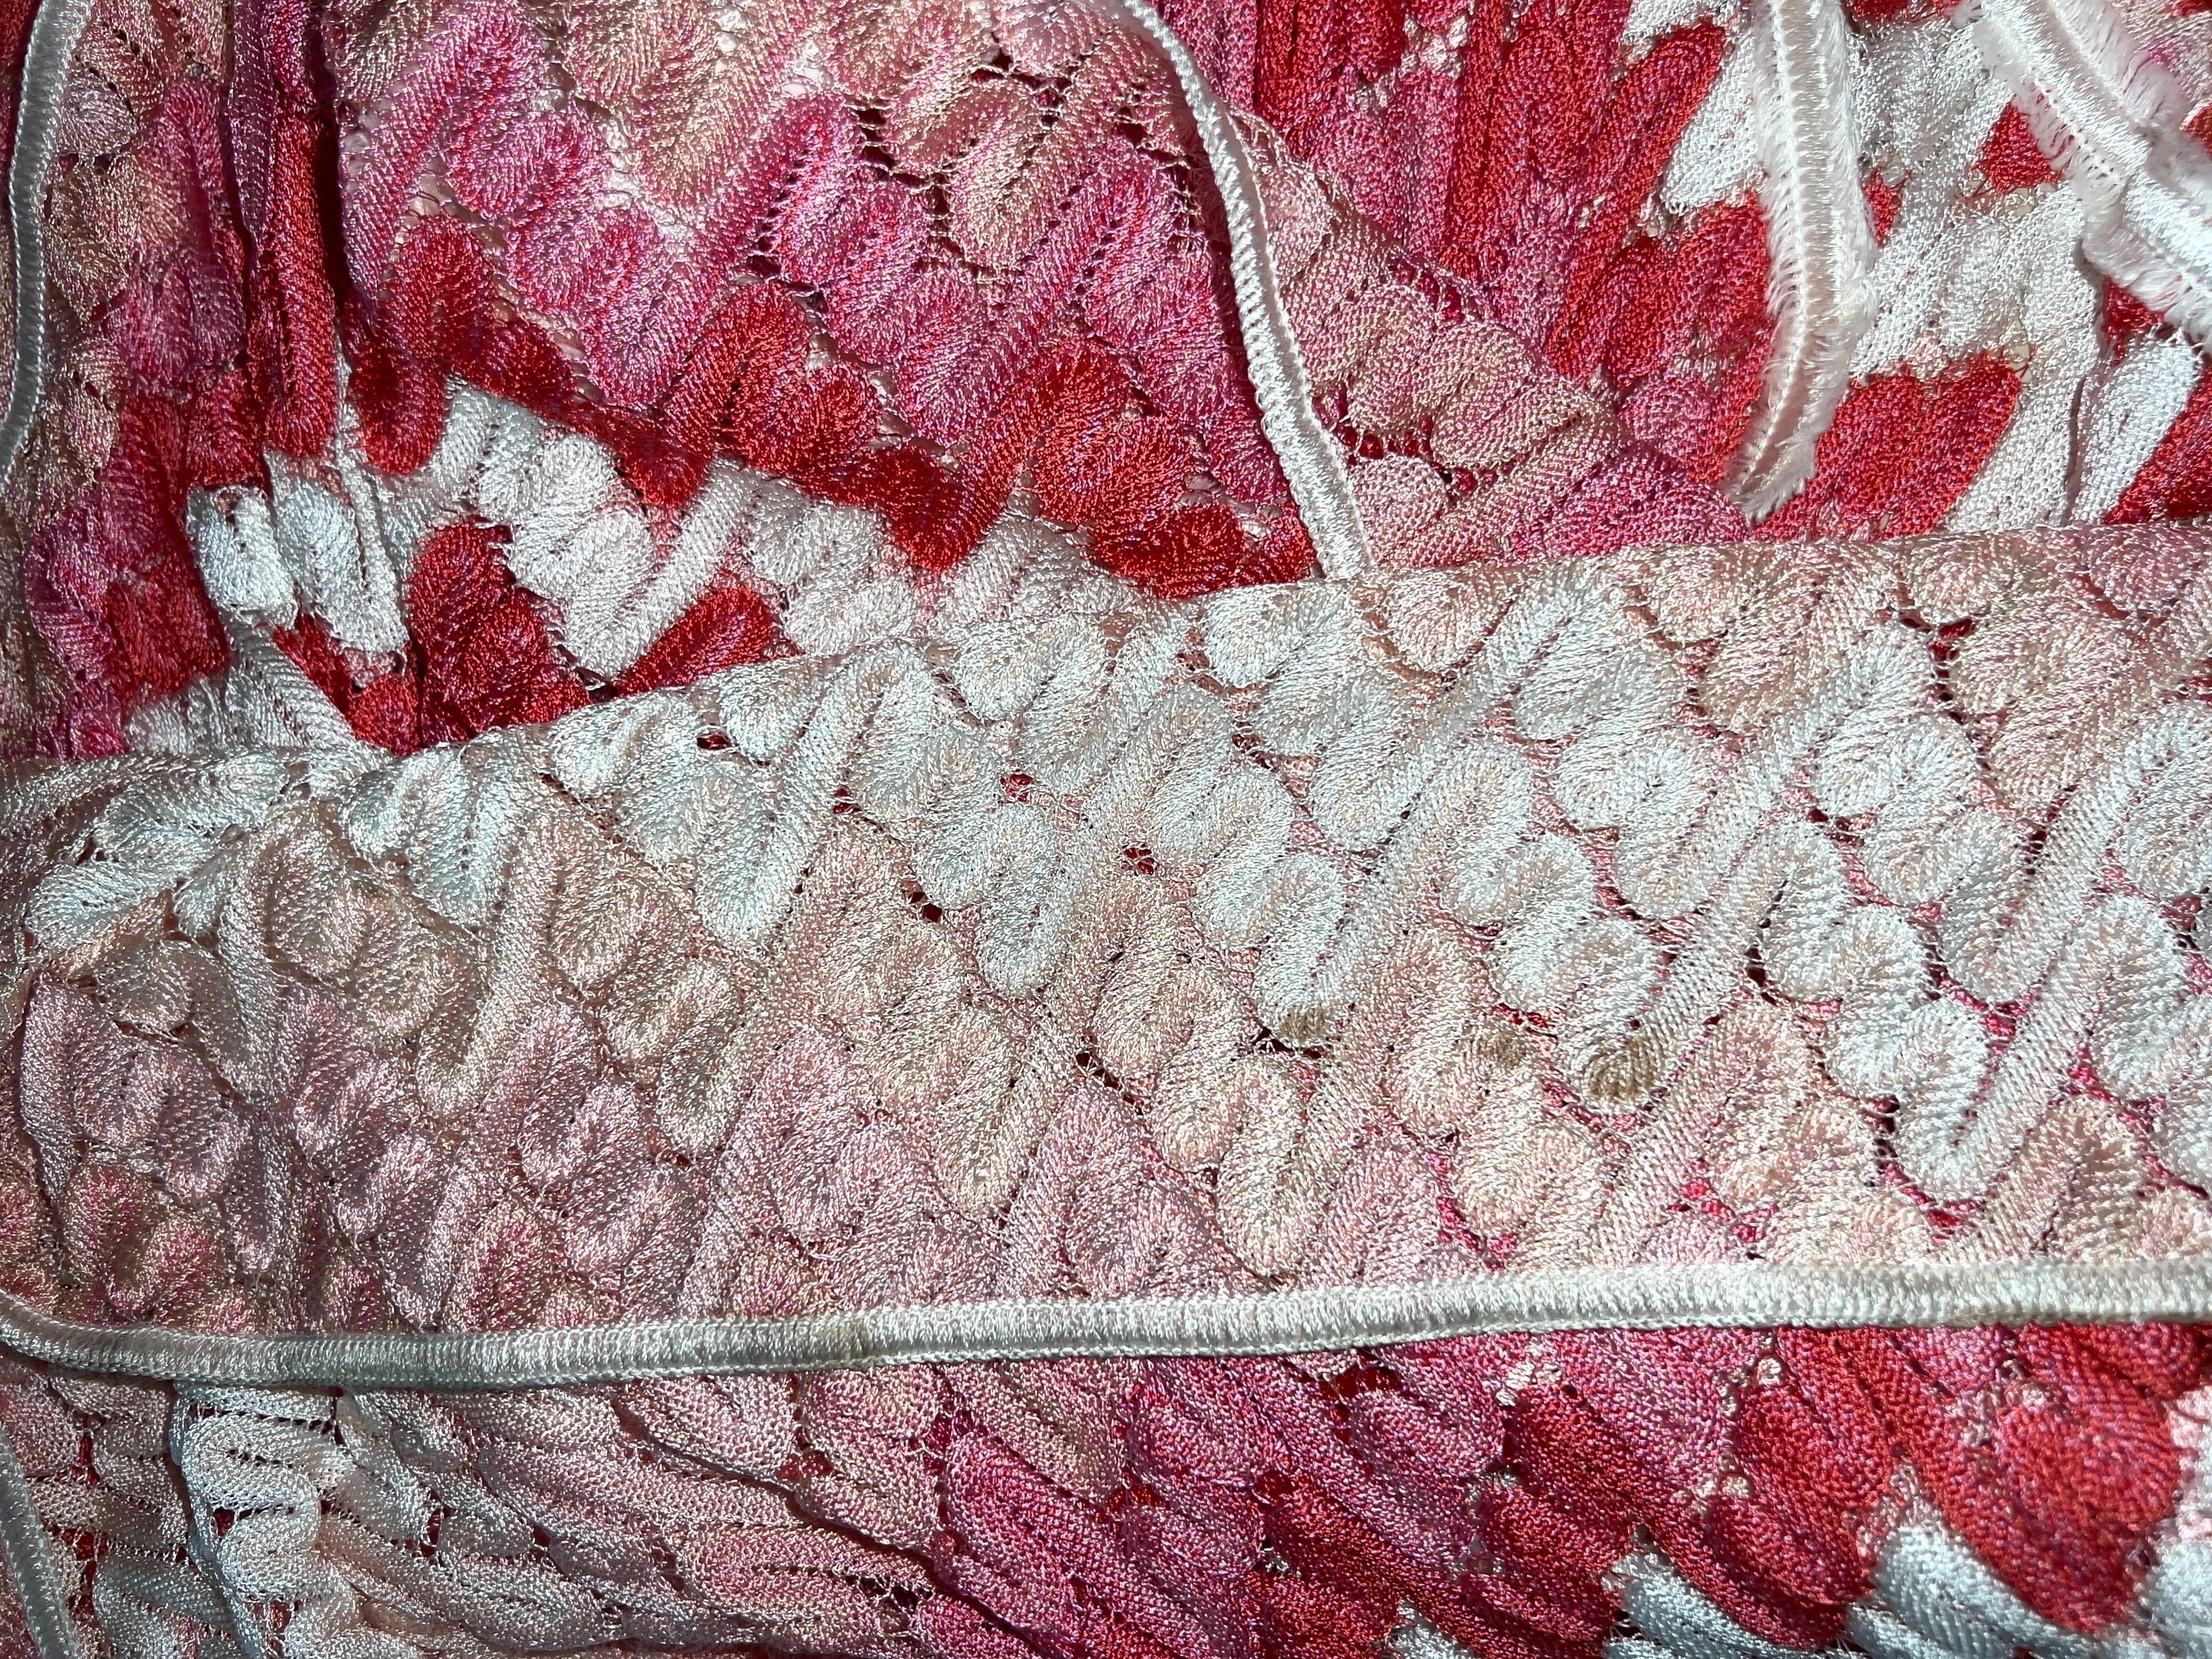 Missoni Crochet Knit Maxi Dress Pink Shades with Peek-a-boo Detail 42 5